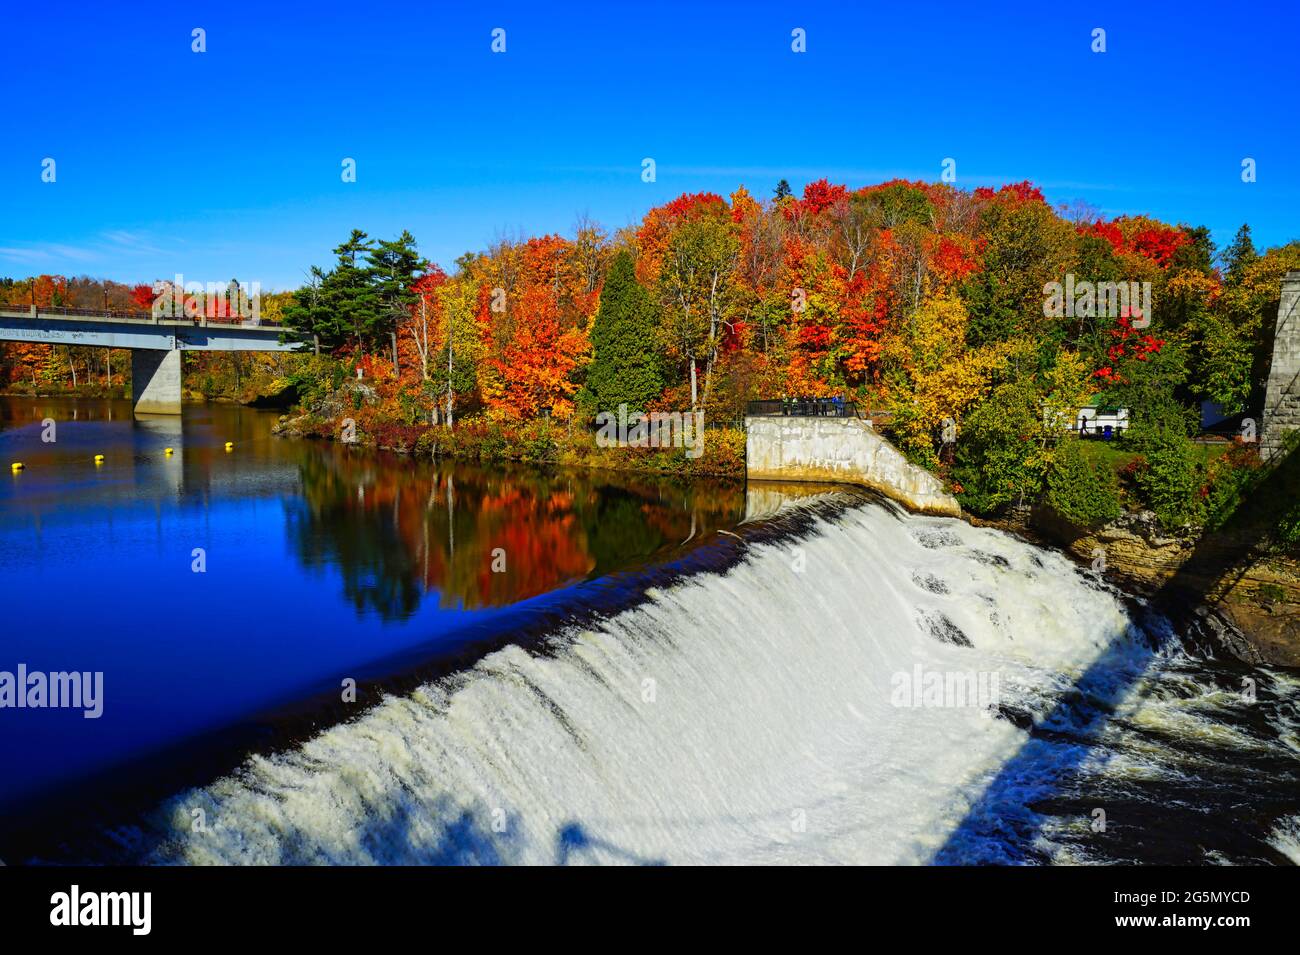 Les chutes et le pont en automne avec des arbres colorés et le ciel bleu. Parc des chutes Montmorency (Parc de la chute-Montmorency), Québec, Canada, 2016. Banque D'Images